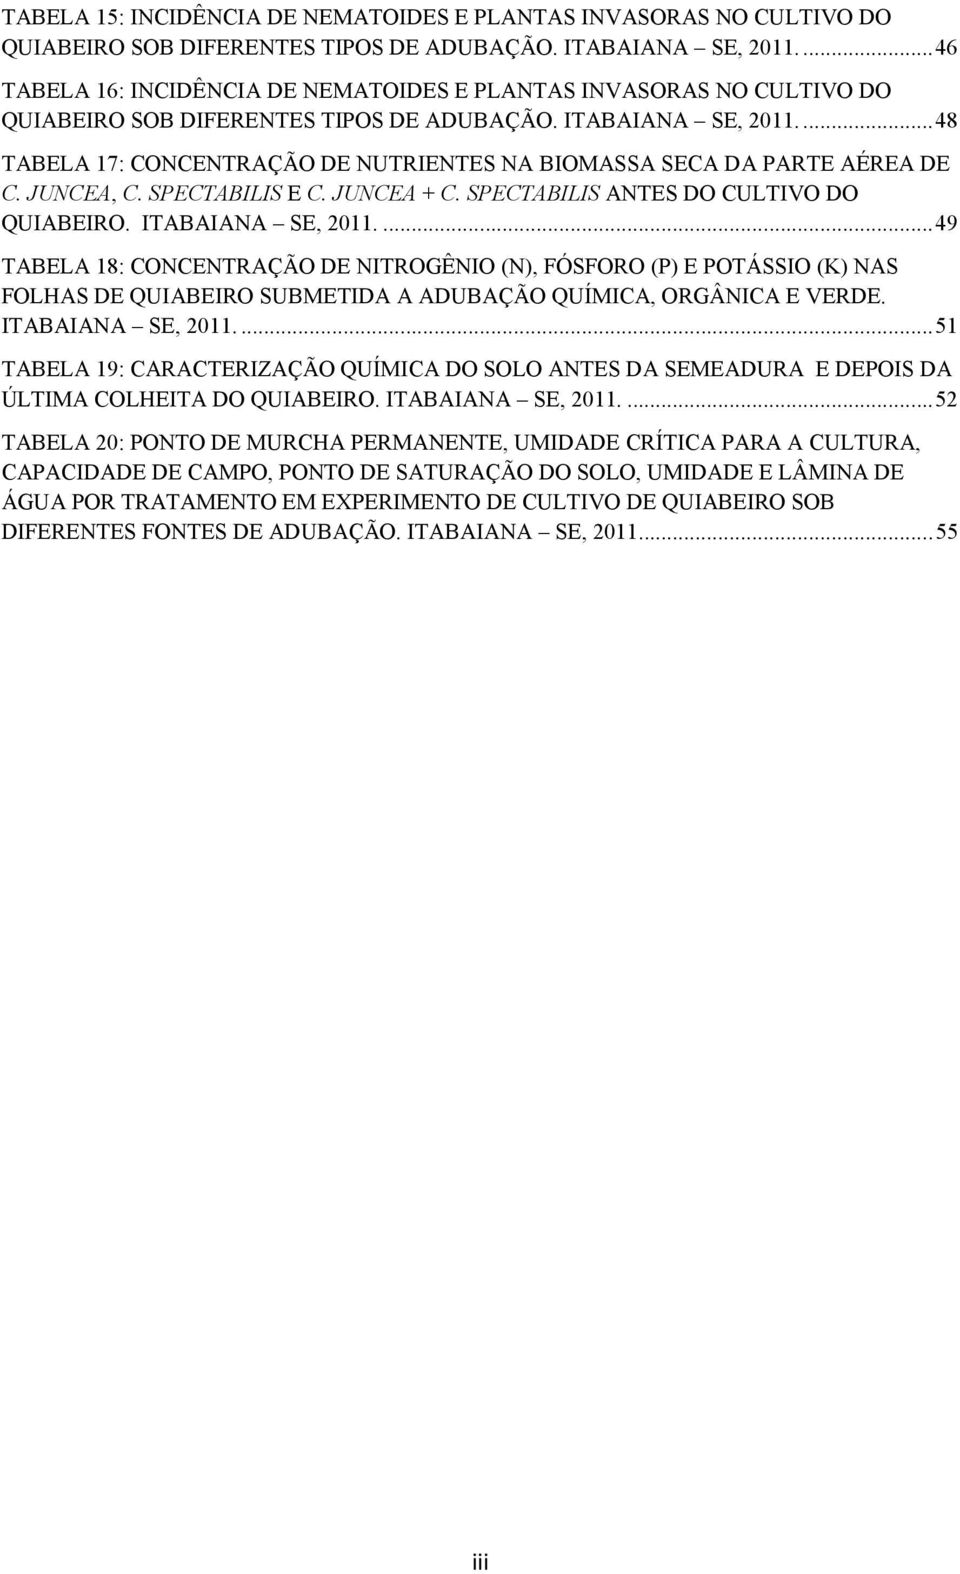 ... 48 TABELA 17: CONCENTRAÇÃO DE NUTRIENTES NA BIOMASSA SECA DA PARTE AÉREA DE C. JUNCEA, C. SPECTABILIS E C. JUNCEA + C. SPECTABILIS ANTES DO CULTIVO DO QUIABEIRO. ITABAIANA SE, 2011.